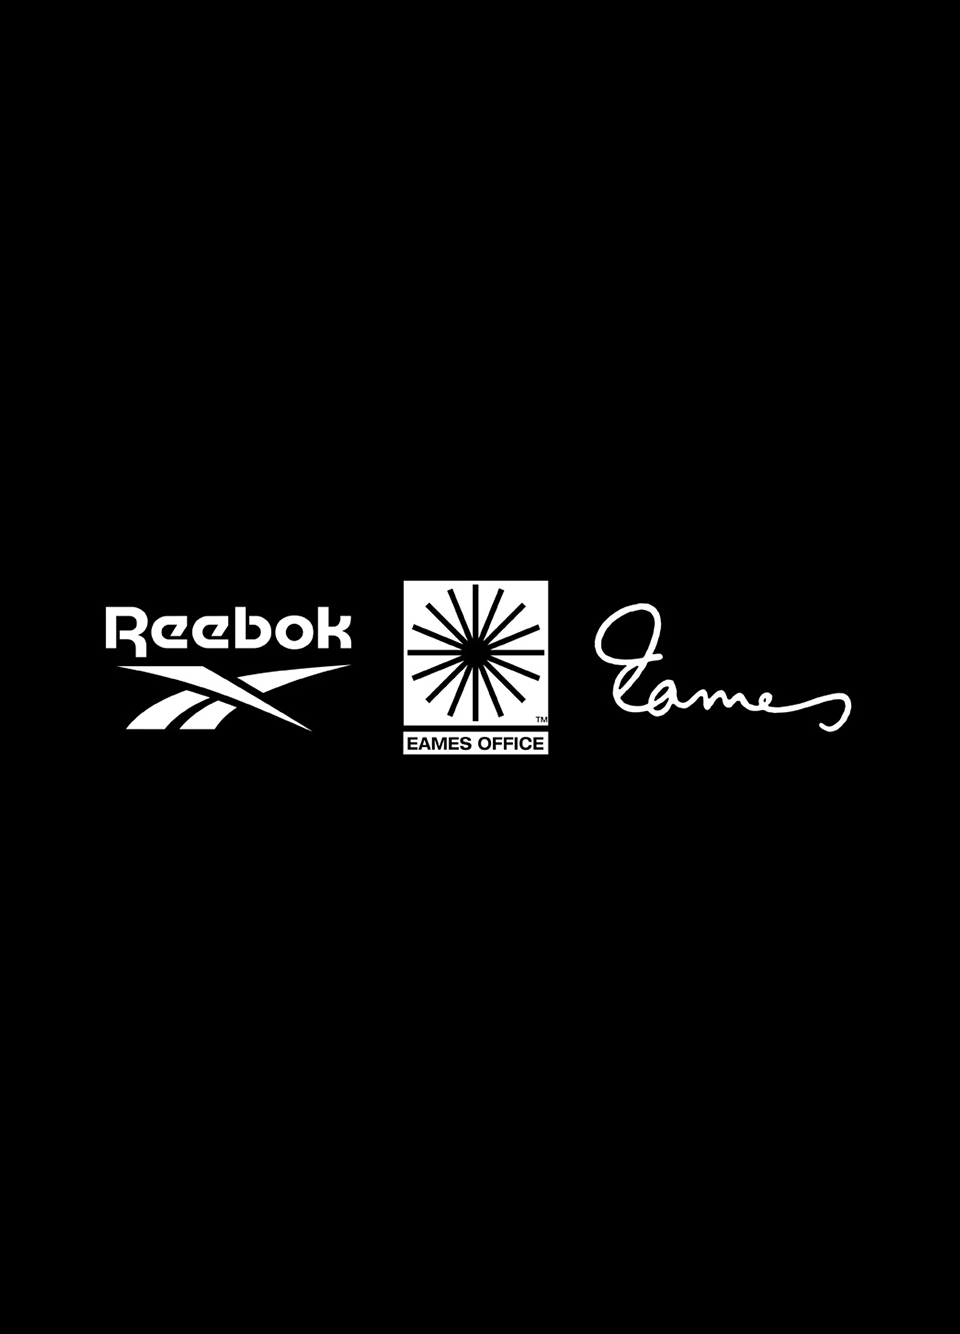 Reebok x Eames